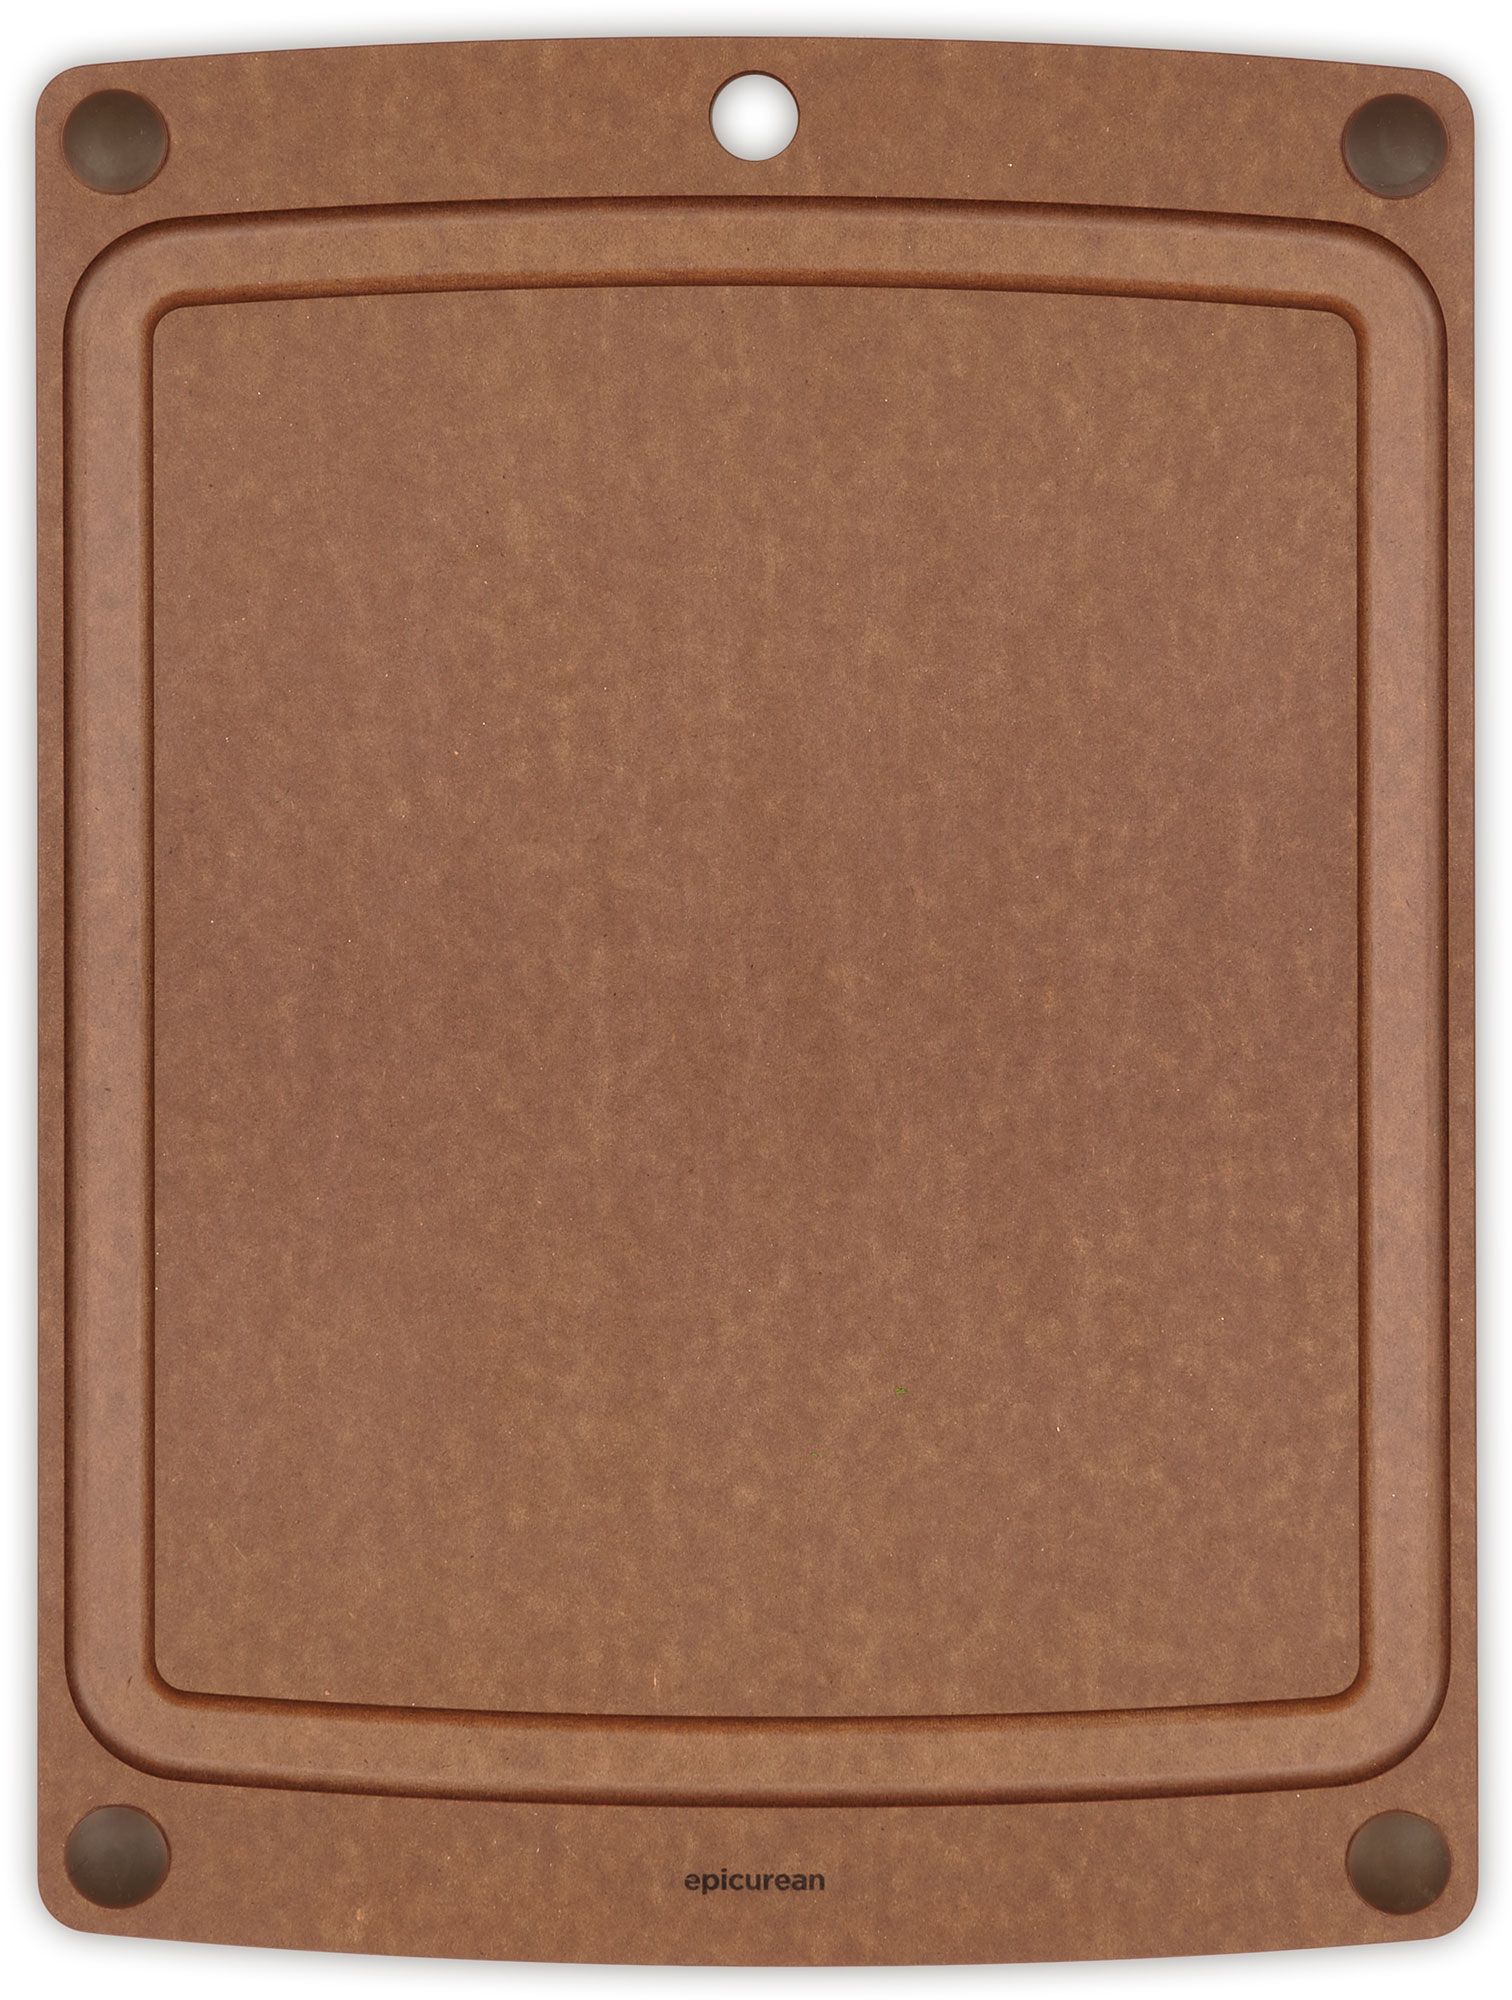 Epicurean All-in-One Cutting Board 19.5 inch x 15 inch - Natural